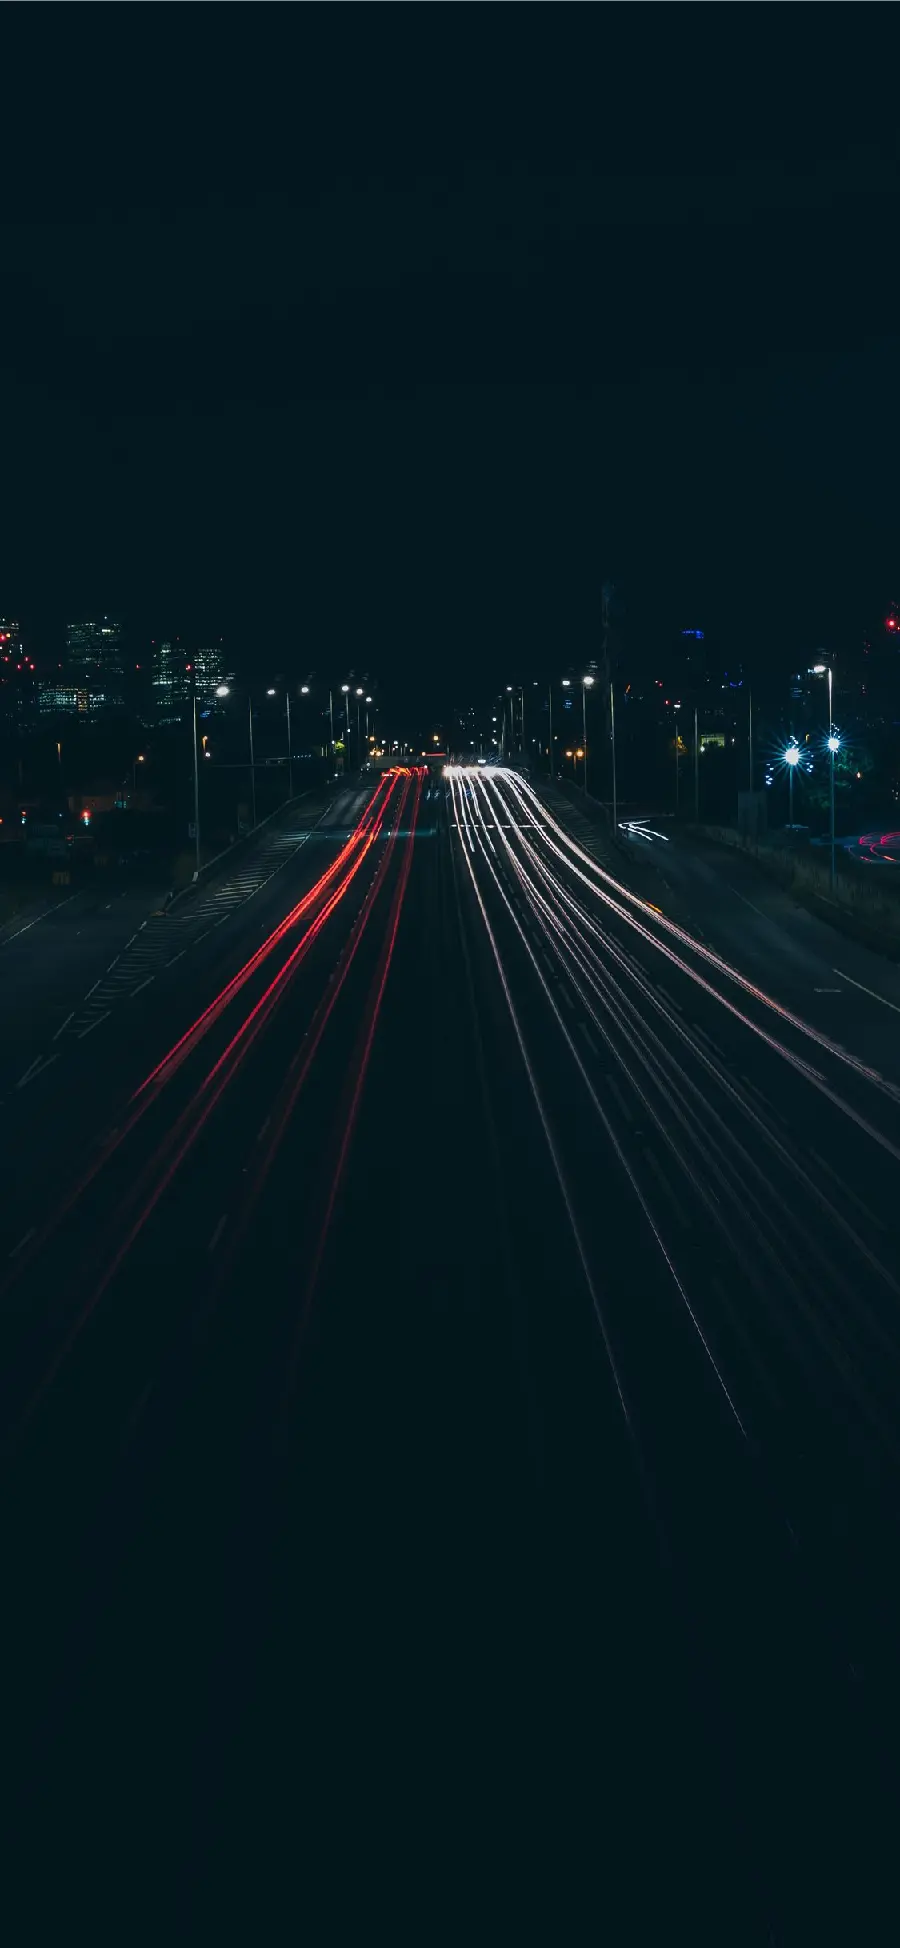 تصویر زمینه شب برای گوشی آیفون با کیفیت 4K